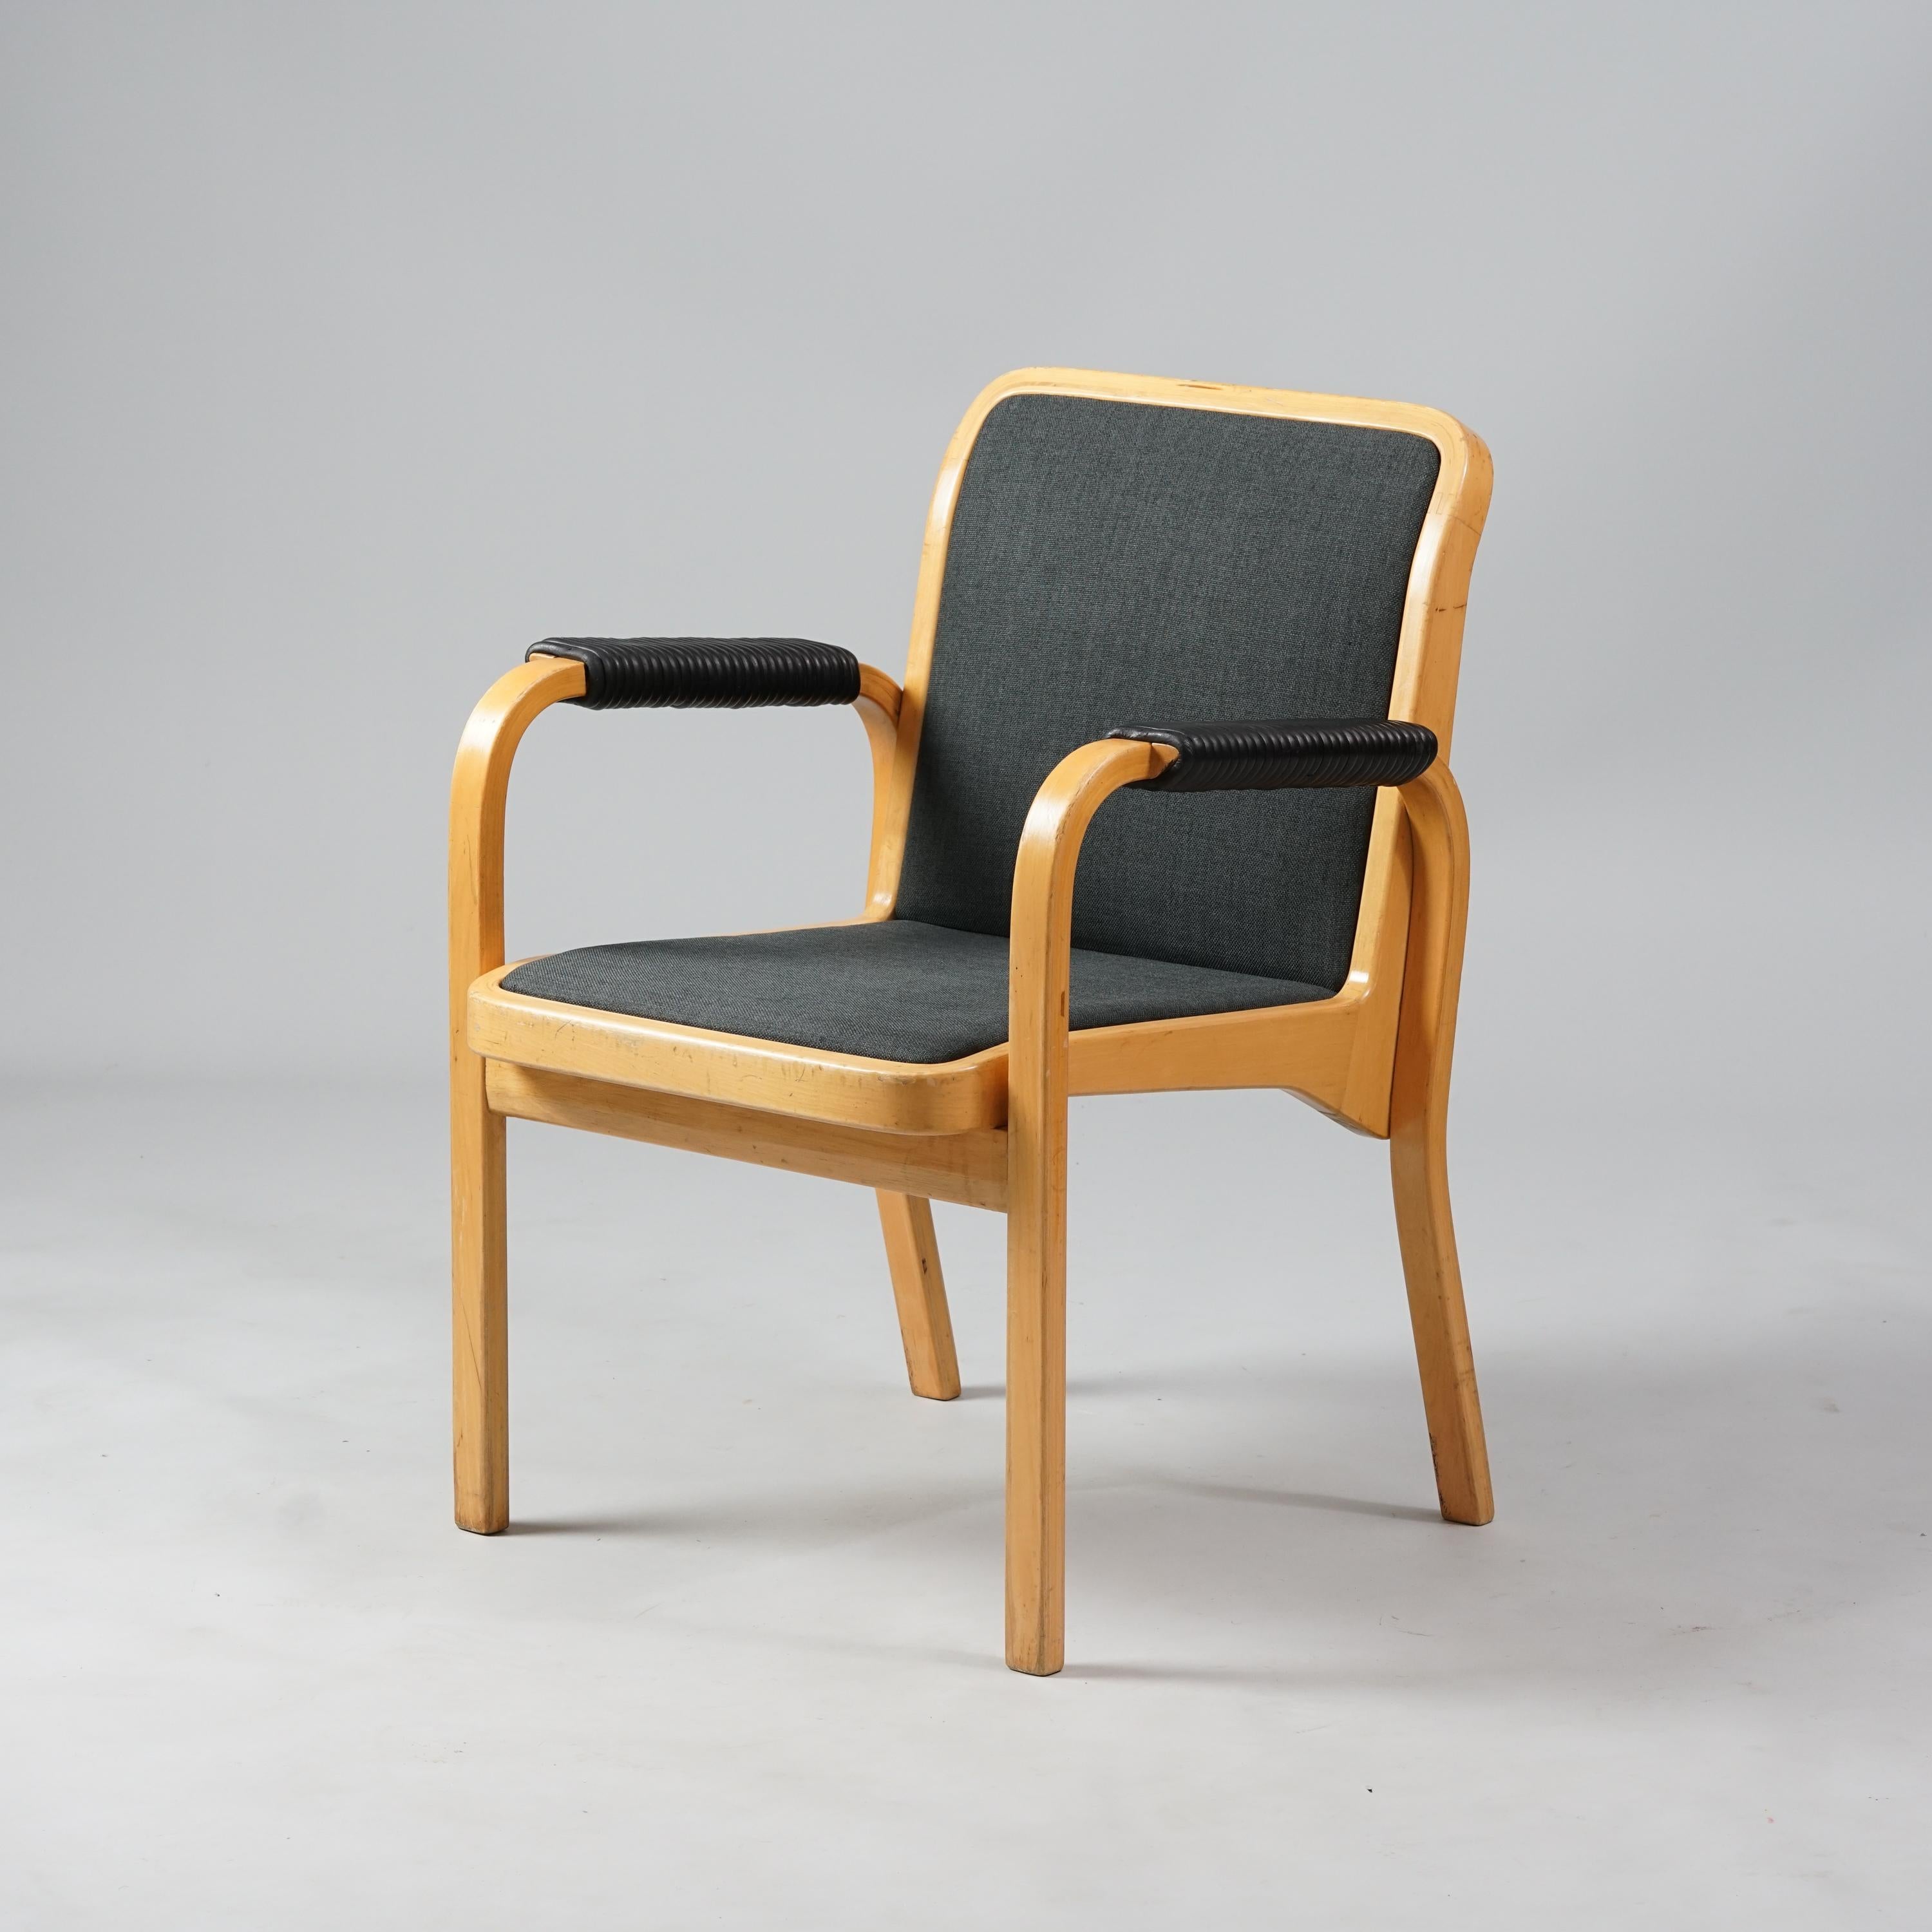 Satz von zwei Sesseln Modell E45, Design Alvar Aalto, hergestellt von Artek, 1960/1970er Jahre, Gestell aus Birke, Lederdetails an den Armlehnen, Polsterung aus Stoff. Guter Vintage-Zustand, geringfügige Abnutzung und Patina im Einklang mit Alter